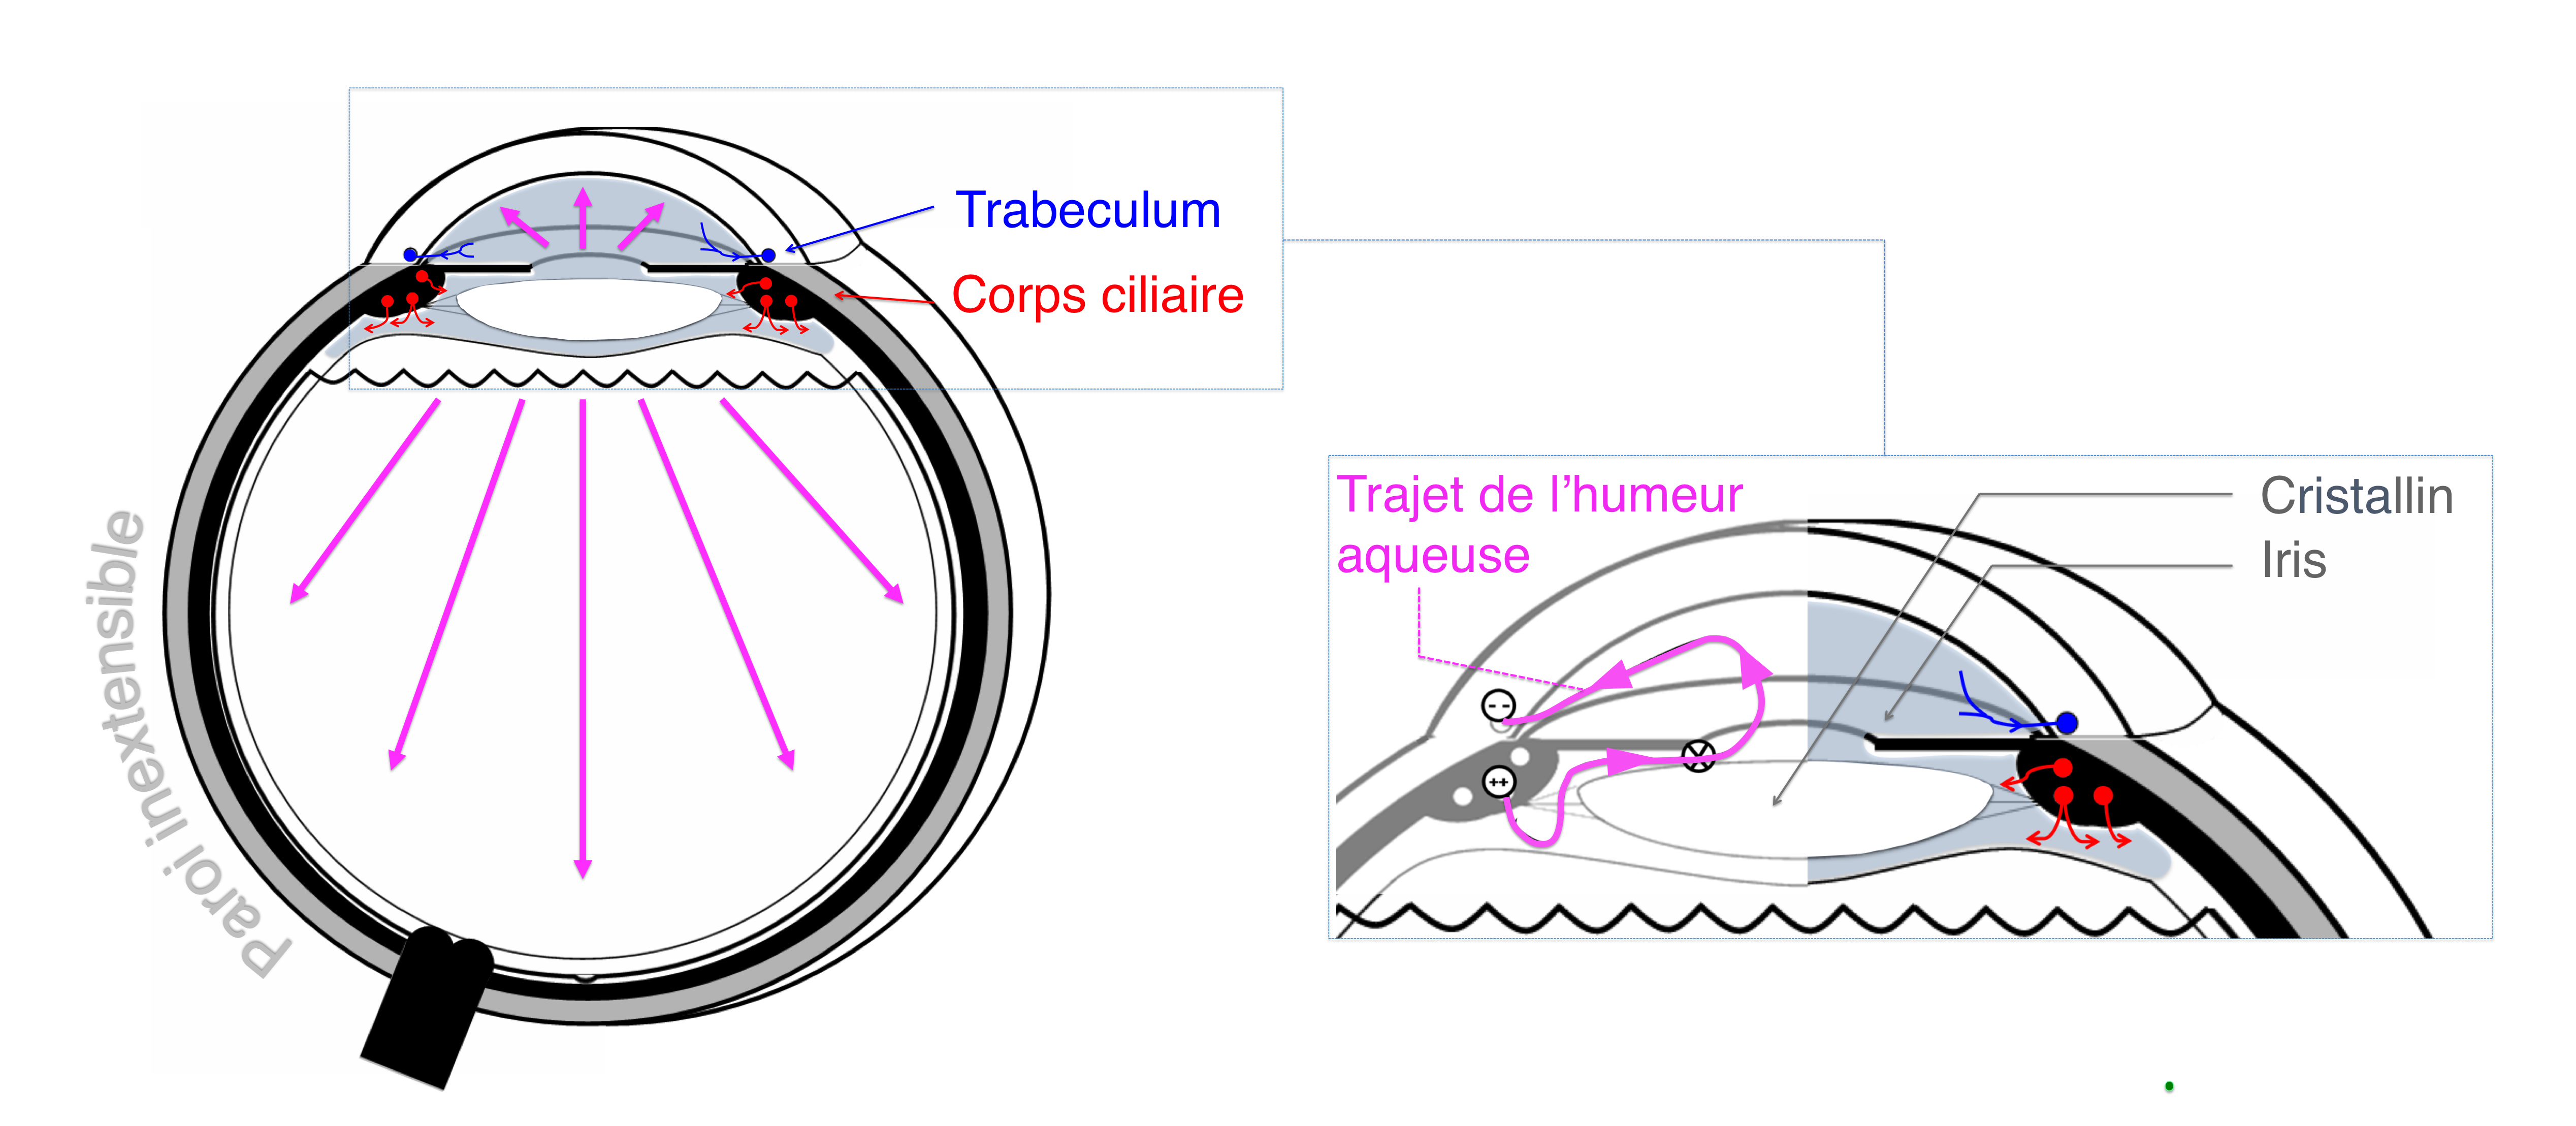 le trajet de l'humeur aqueuse : sécrétée par le corps ciliaire et résorbée par le trabeculum au niveau de l'angle irido cornéen